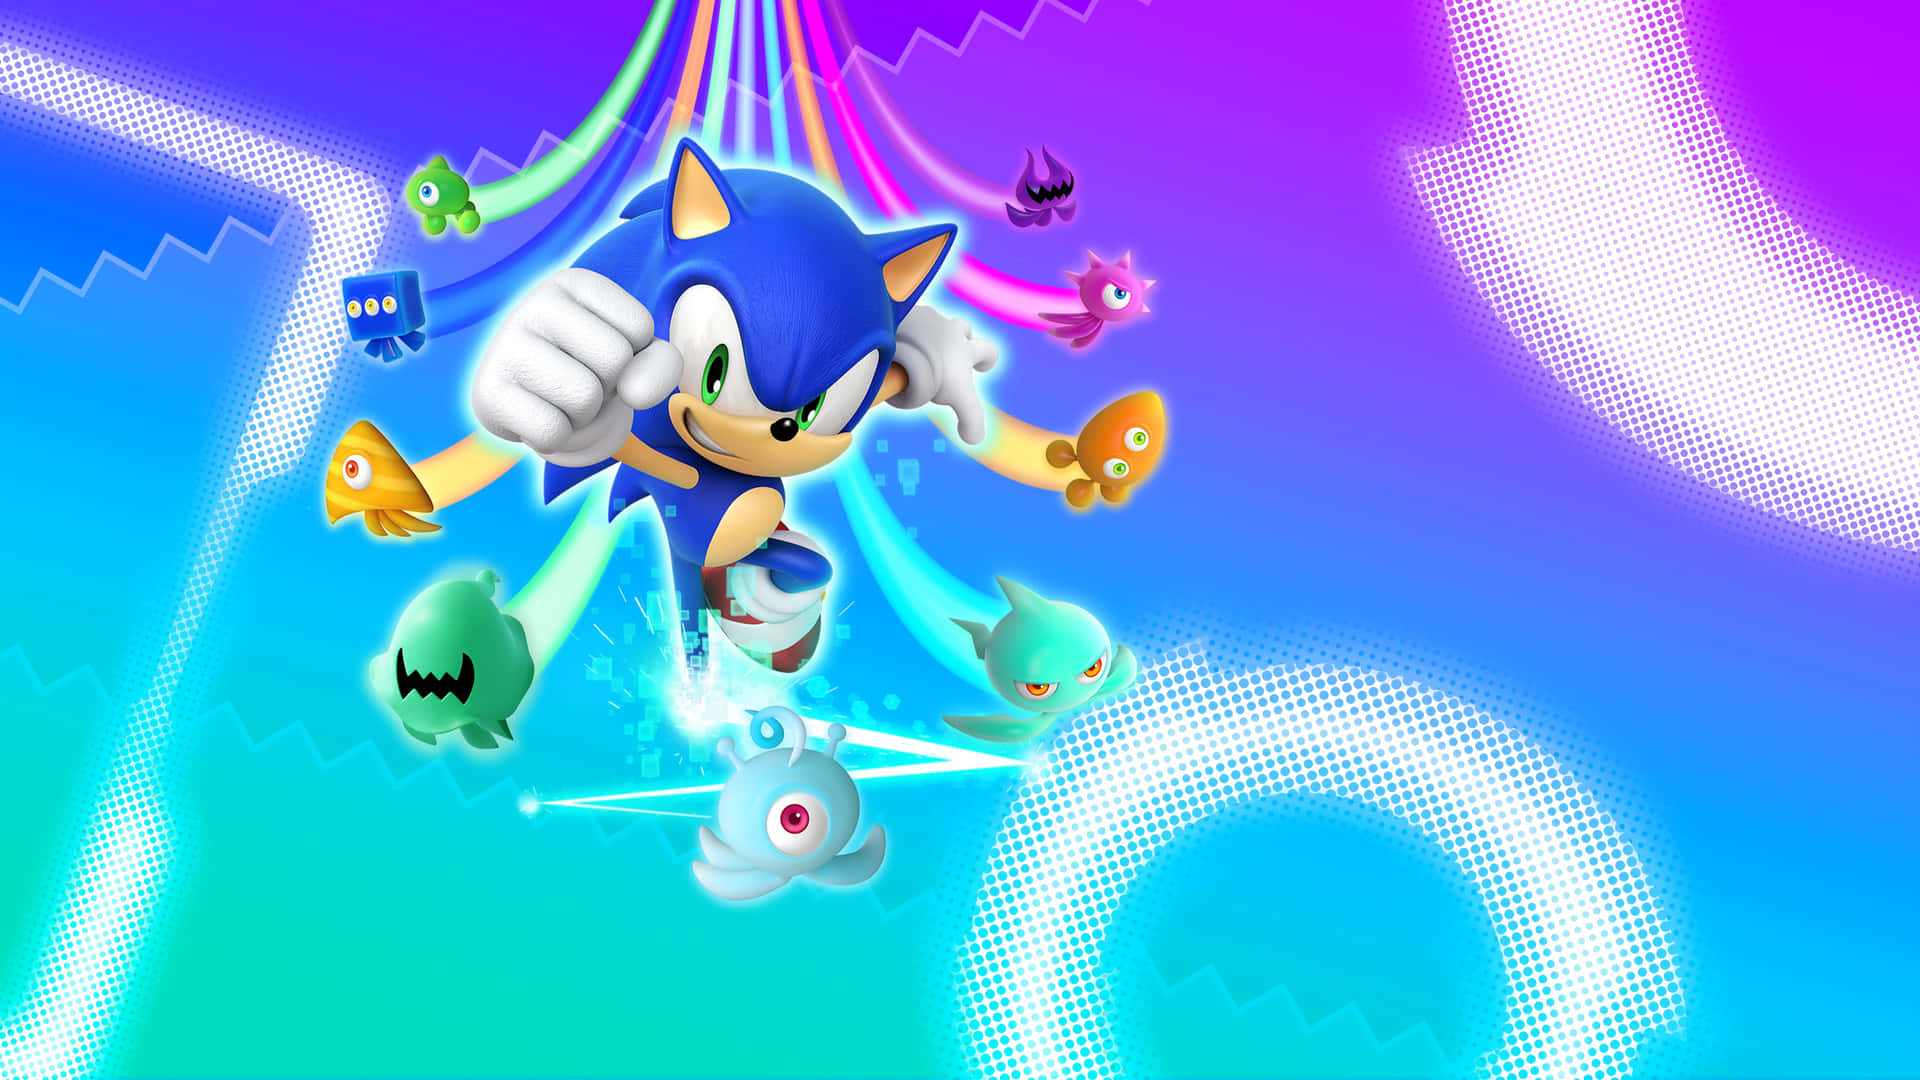 Sonic løber farverigt igennem himlen i Sonic Colors Wallpaper. Wallpaper